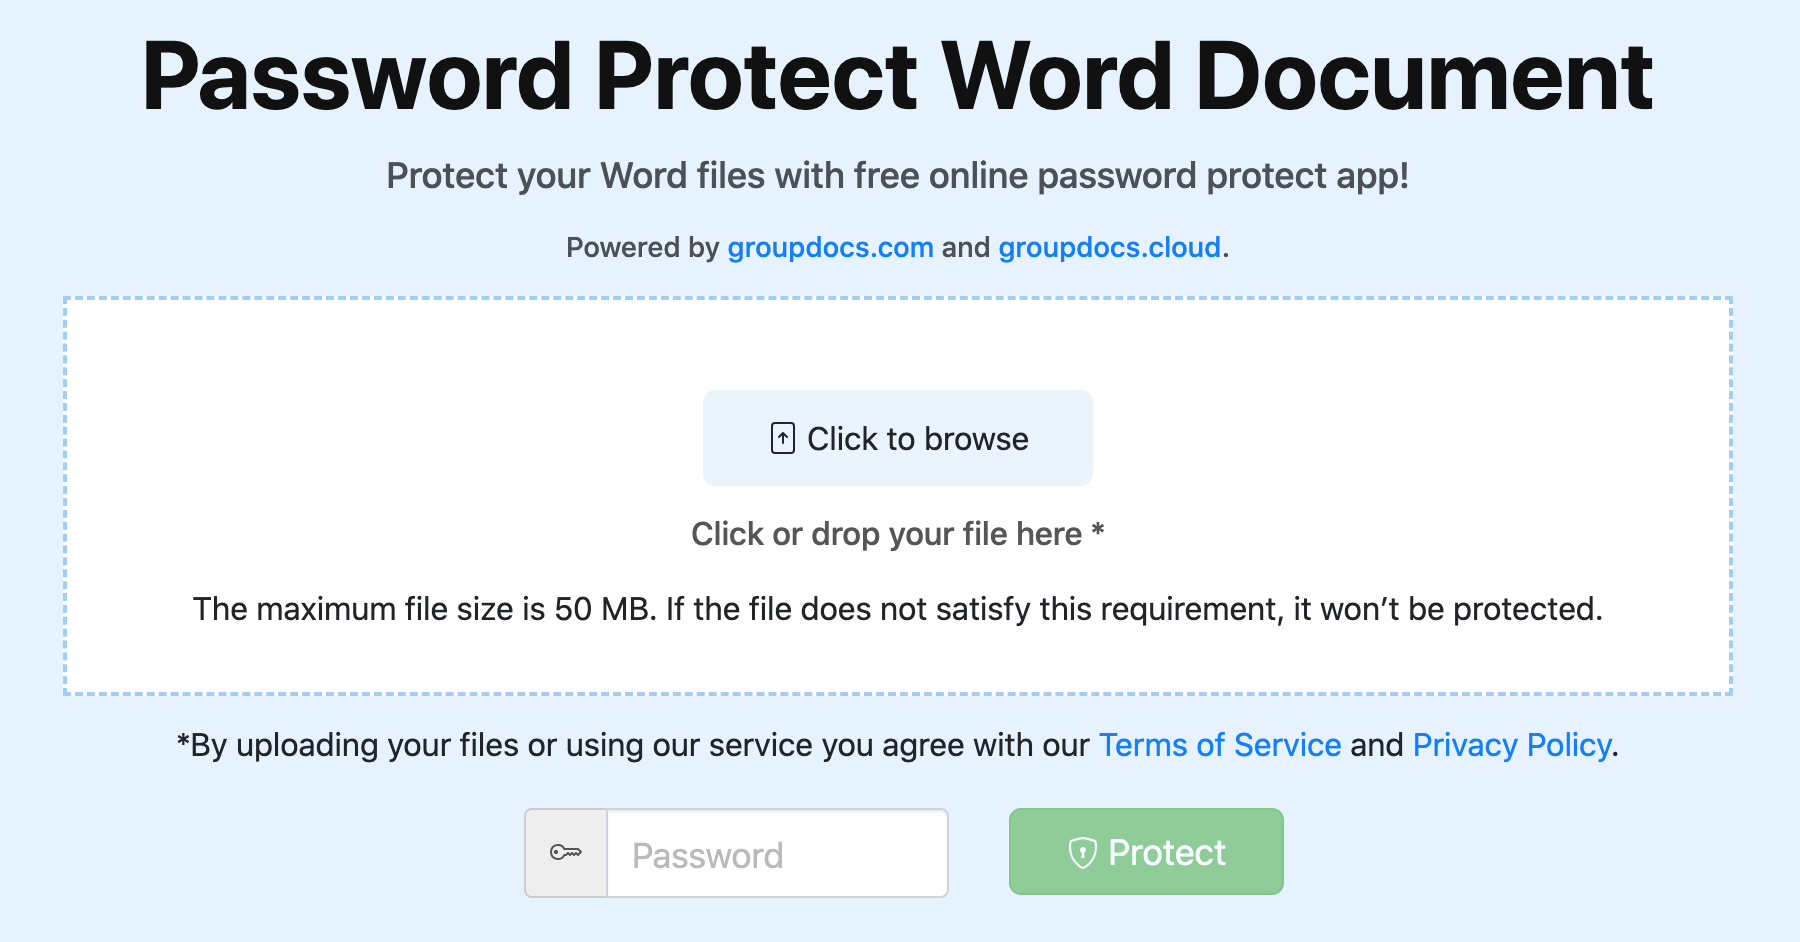 حماية مستندات Word عبر الإنترنت بكلمة مرور